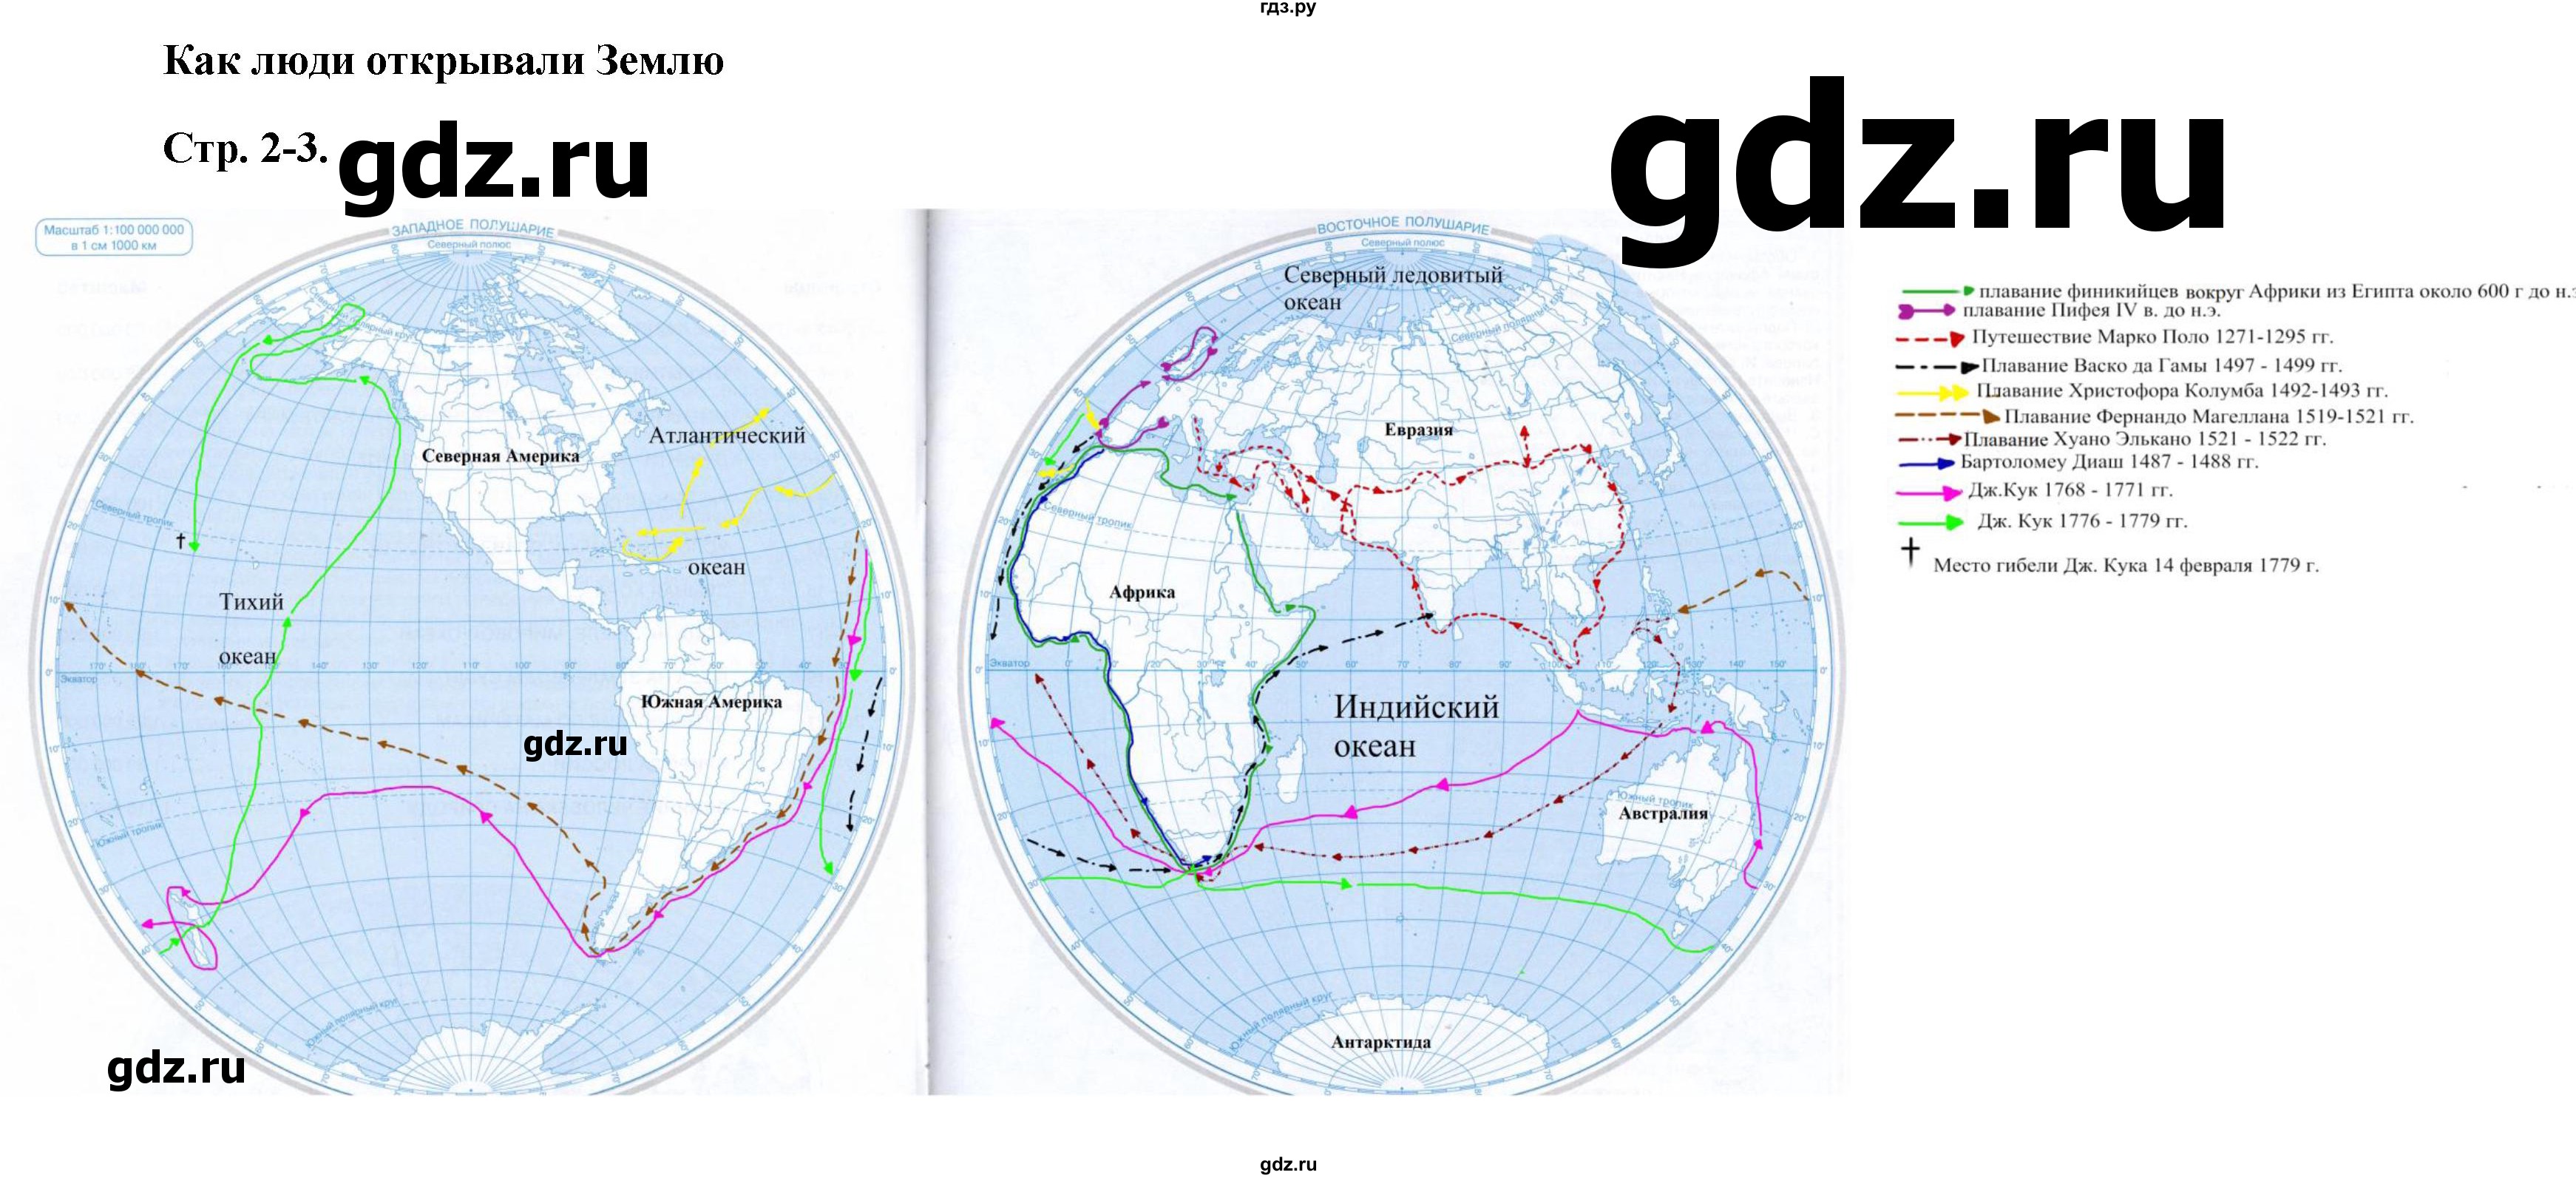 ГДЗ контурные карты стр.2-3 география 5 класс атлас с контурными картамиКурбский, Герасимова